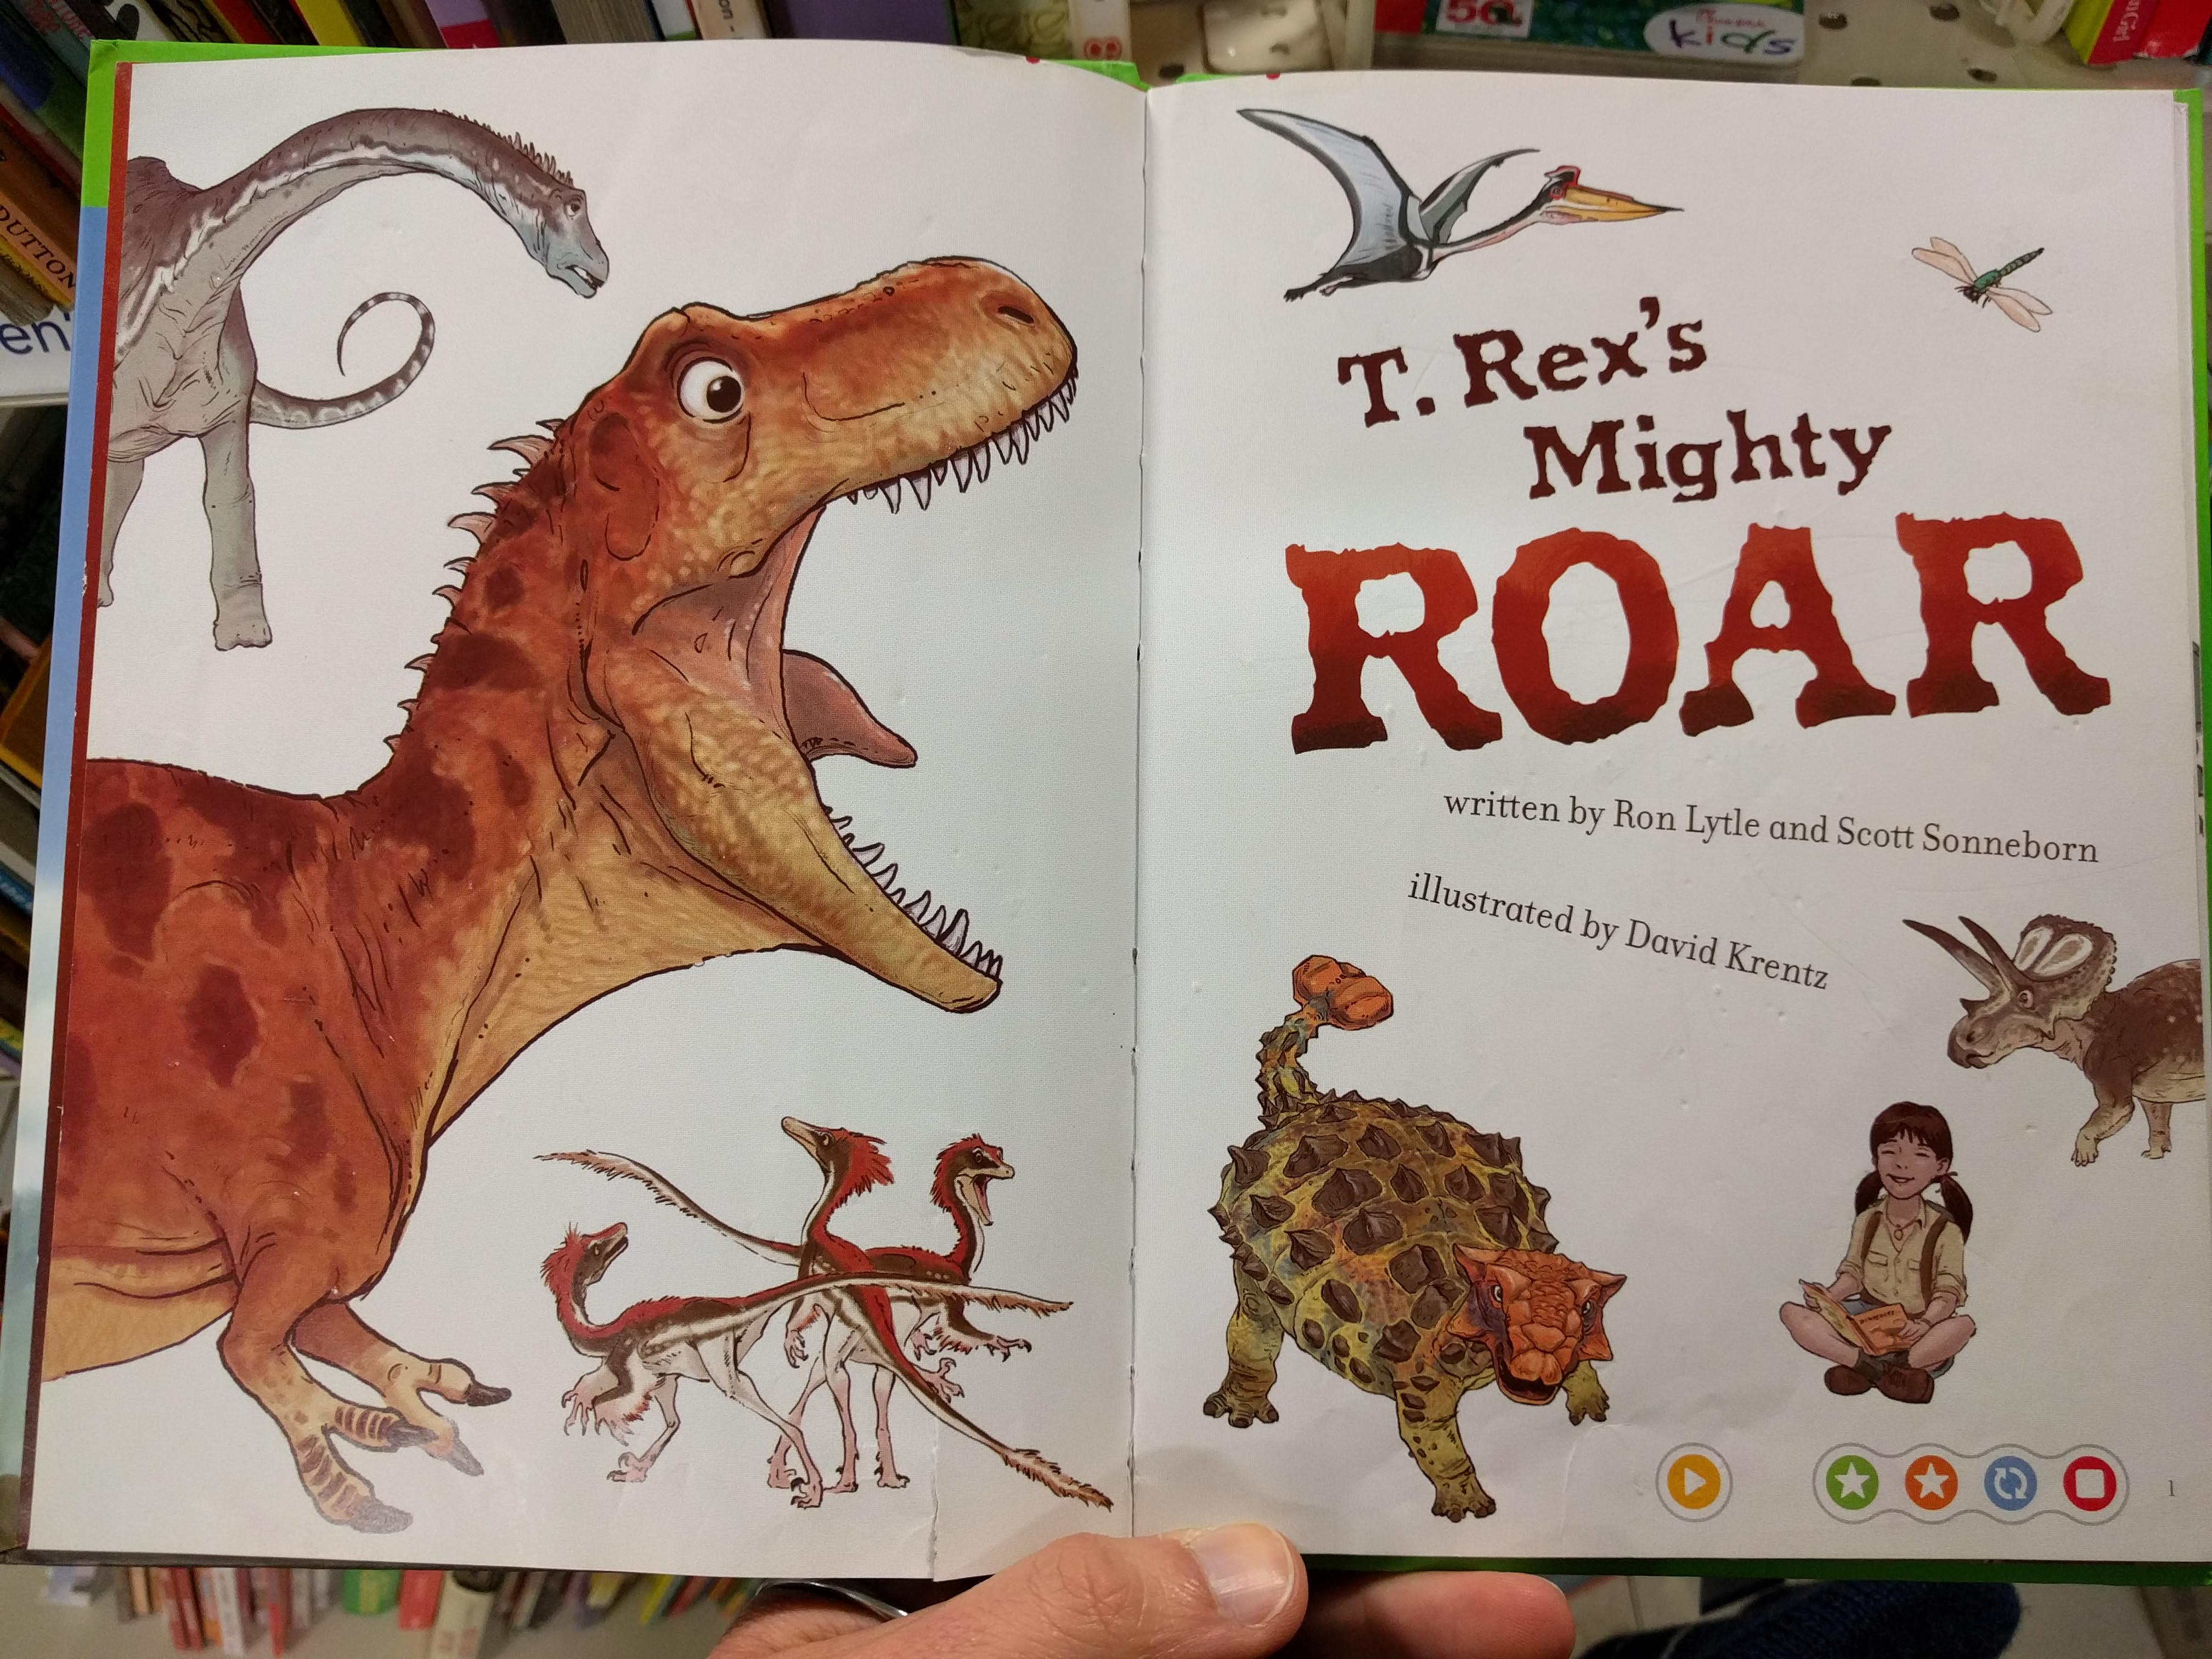 Title page spread of T. Rex's Mighty Roar